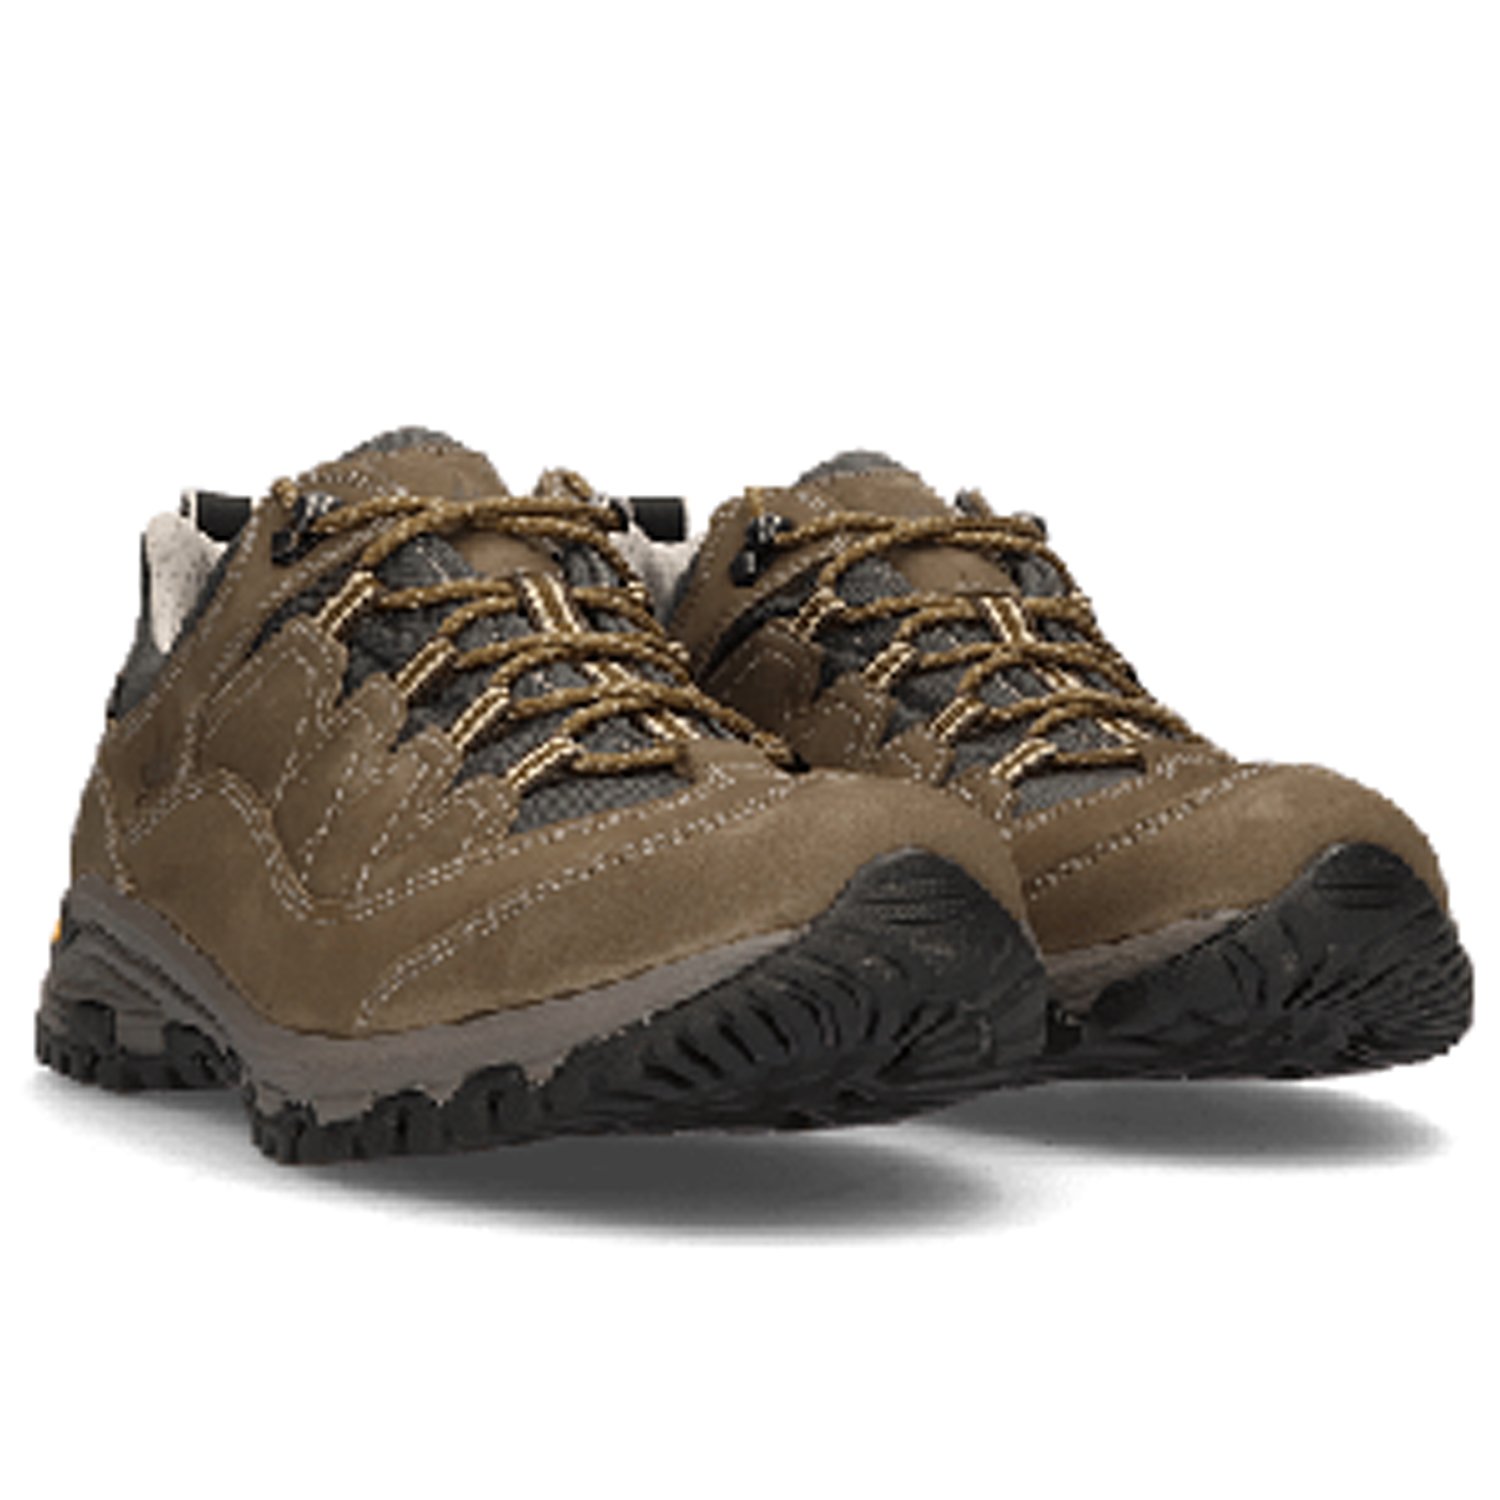 Ботинки Lomer Sella Ii Mtx Nubuck Olive, мужской, коричневый, 2022-23, 30042_A_02 ботинки lomer bio naturale canvas jasper 38 eu